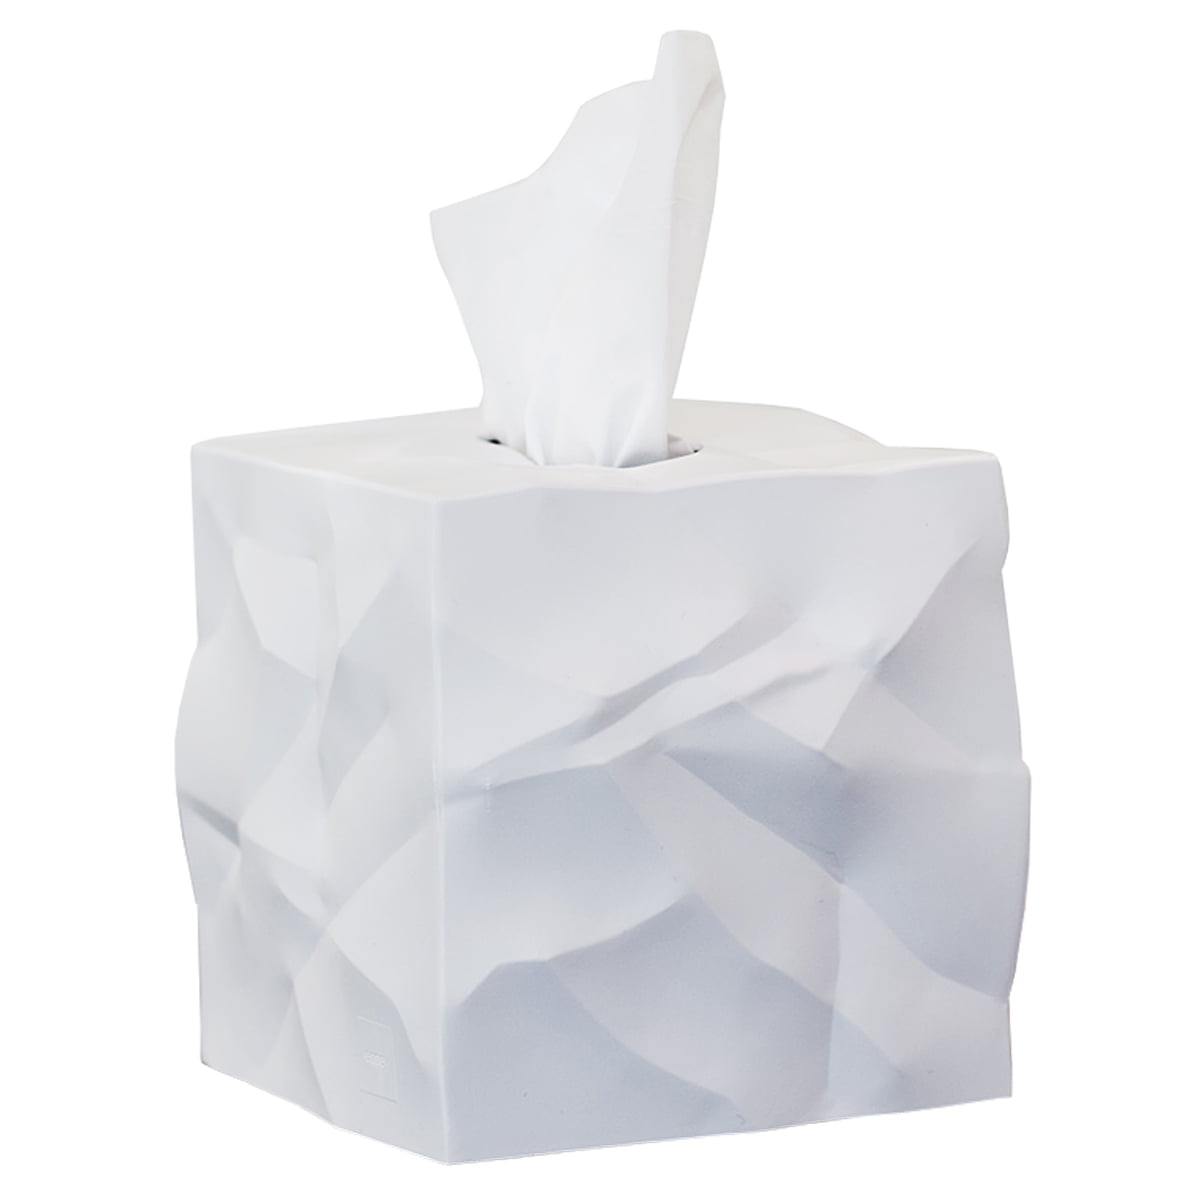 Zimtky Papiertuchbox Kosmetiktücher Box Taschentuchbox Tücherbox für Büro/ Auto/Zuhause